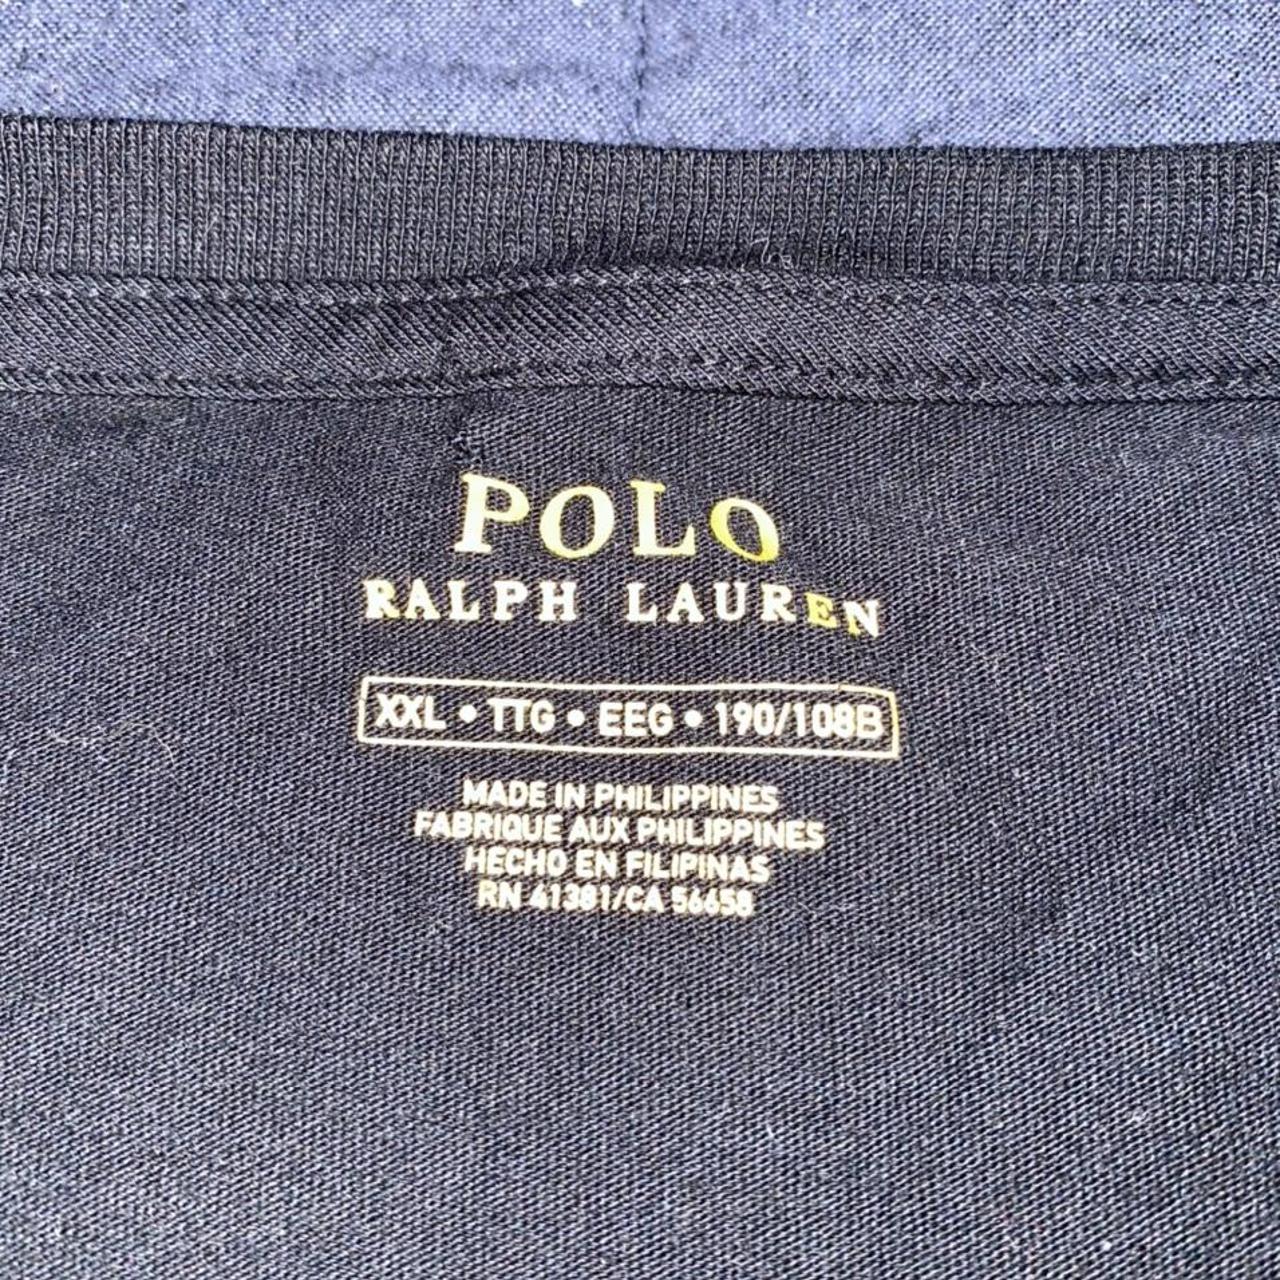 ralph lauren polo bear t shirt XXL T Shirt fits a... - Depop